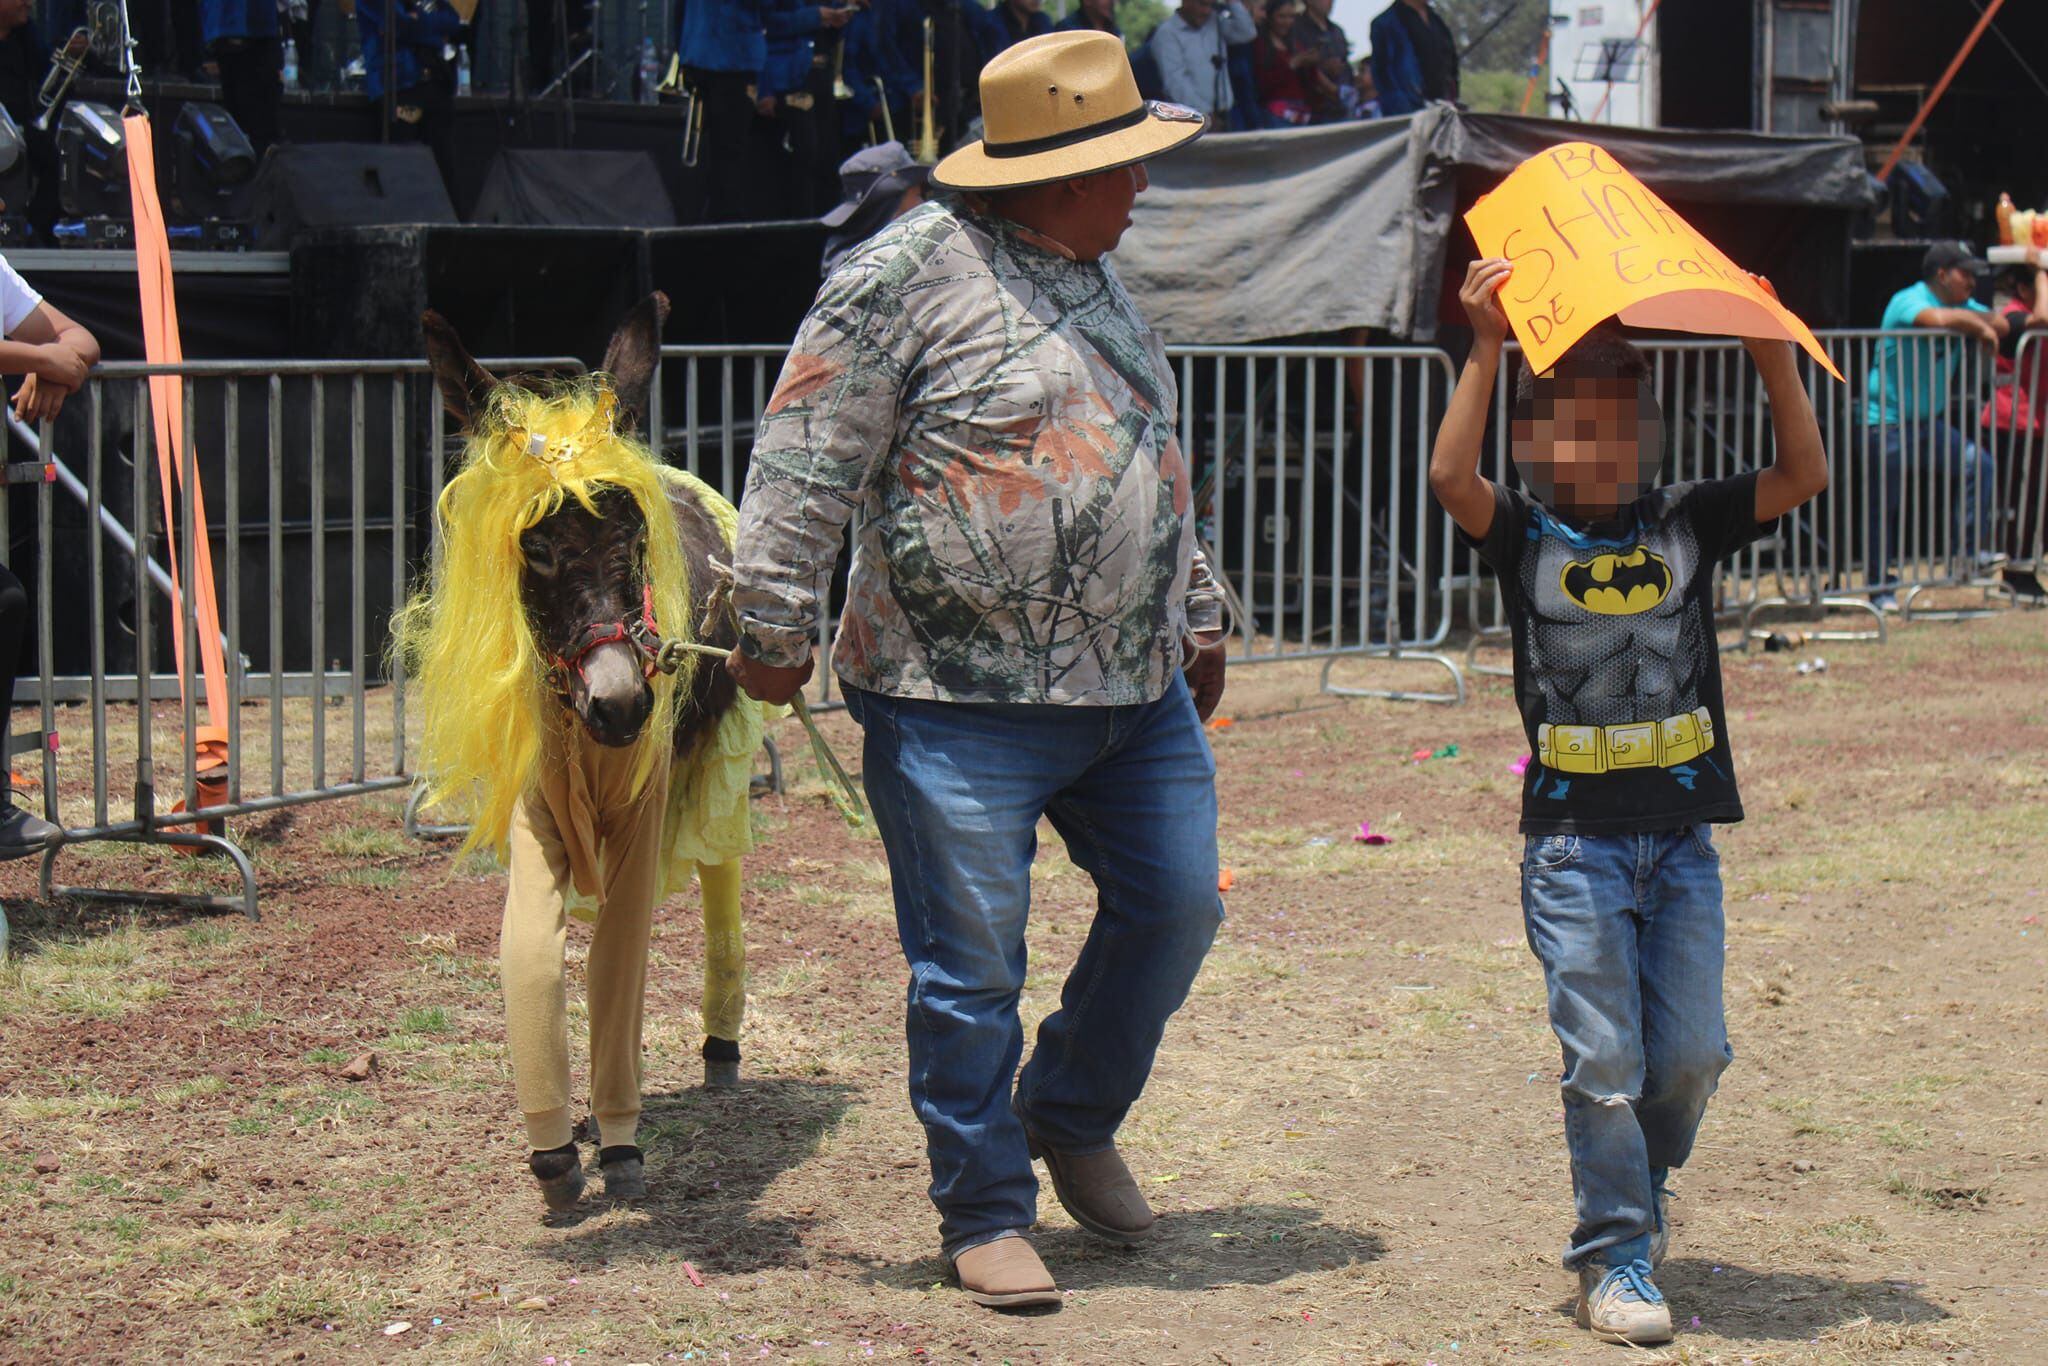 También participaron niños en el festival. (Facebook/Feria Nacional del Burro Otumba 2024).

Burros, equinos, feria nacional del burro 2024, Otumba, México, disfraces, polo, animales, mascotas